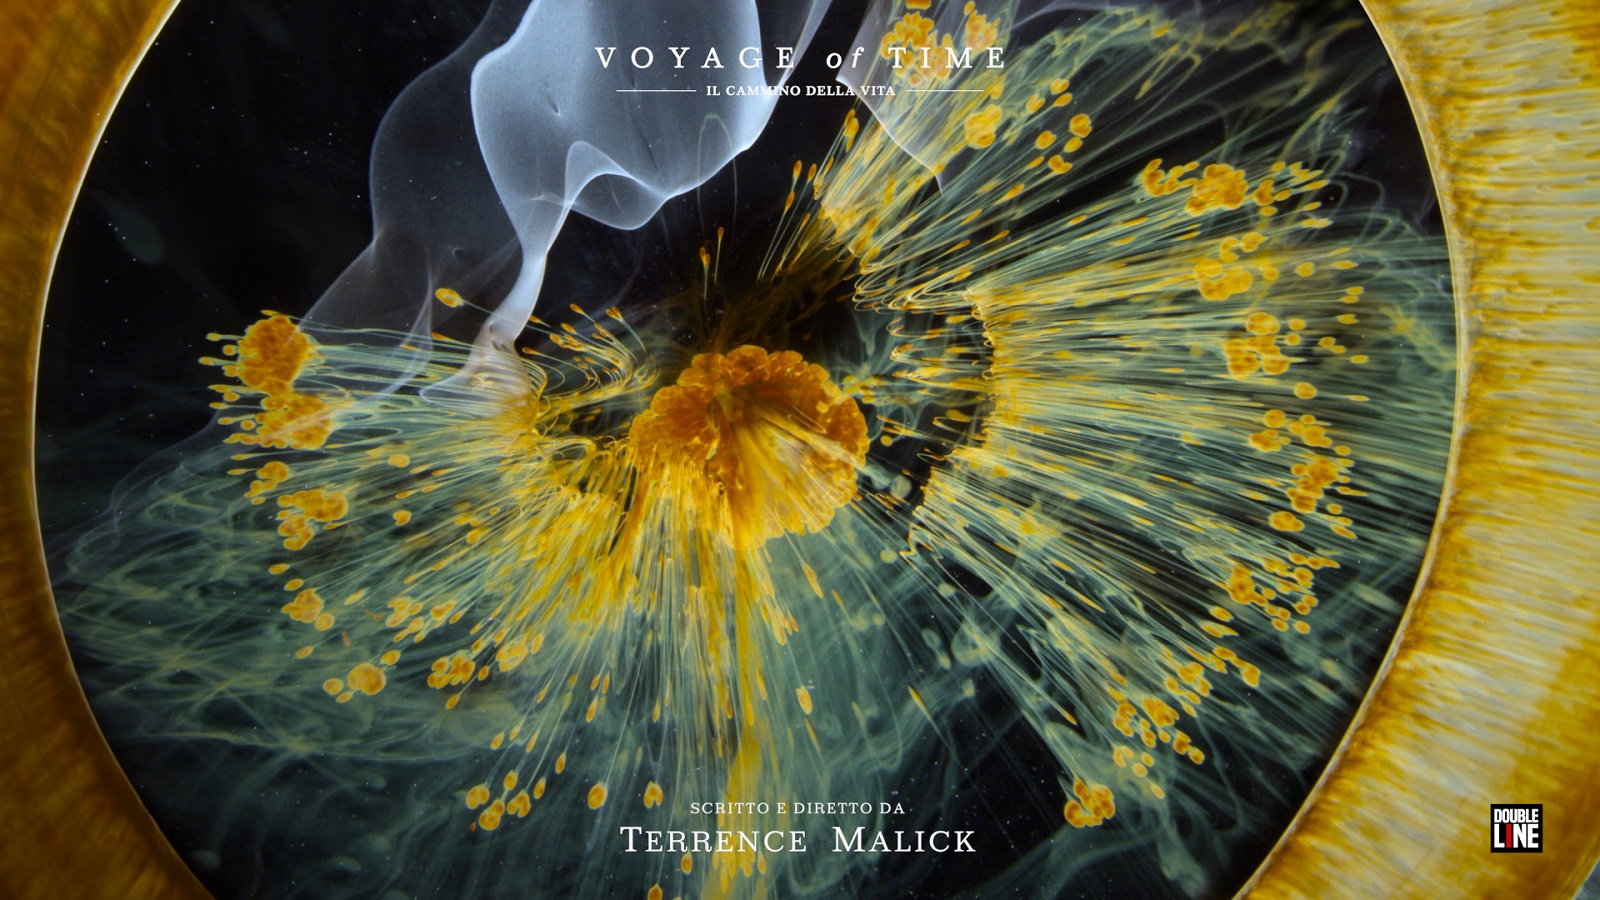 Voyage of Time di Terrence Malick dal 3 marzo al cinema